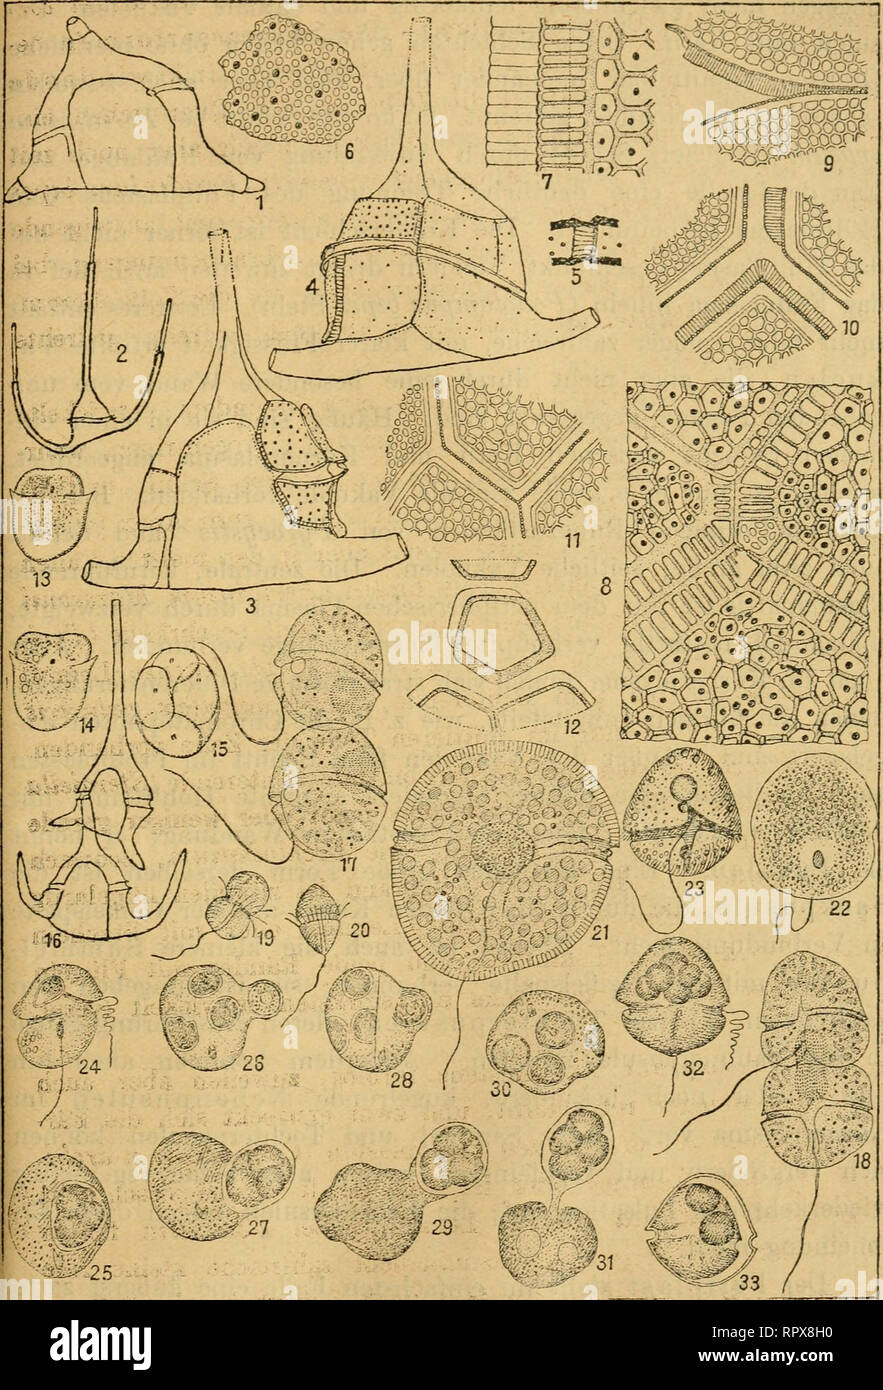 . Algen I. (Schizophyceen, Flagellaten, Peridineen). Algae -- Germany. 565. hJiiJ&gt; Fig. 1. Ceratium äiväricatum. 2. C. Ostenfeldii. 3—4. C. arcuatum. 5. C. protuberans 6. Dino- physis rotuHdata. 1—8. Feridinium divergens. 9—11. P. ovatum. 12. Goniodoma acuminatum. 13—15. Gymnodinium musei, 16. Ceratium tripos forma. 17—18. Gymnodinium rufescens. 19—20. G. varians. 21. G. tenuissimum. 22. G. paradoxum. 23. G. vorticella. 24—31. SptVo- dinium hyalinum. 32—33. Glenodinium edax.. Please note that these images are extracted from scanned page images that may have been digitally enhanced for reada Stock Photo